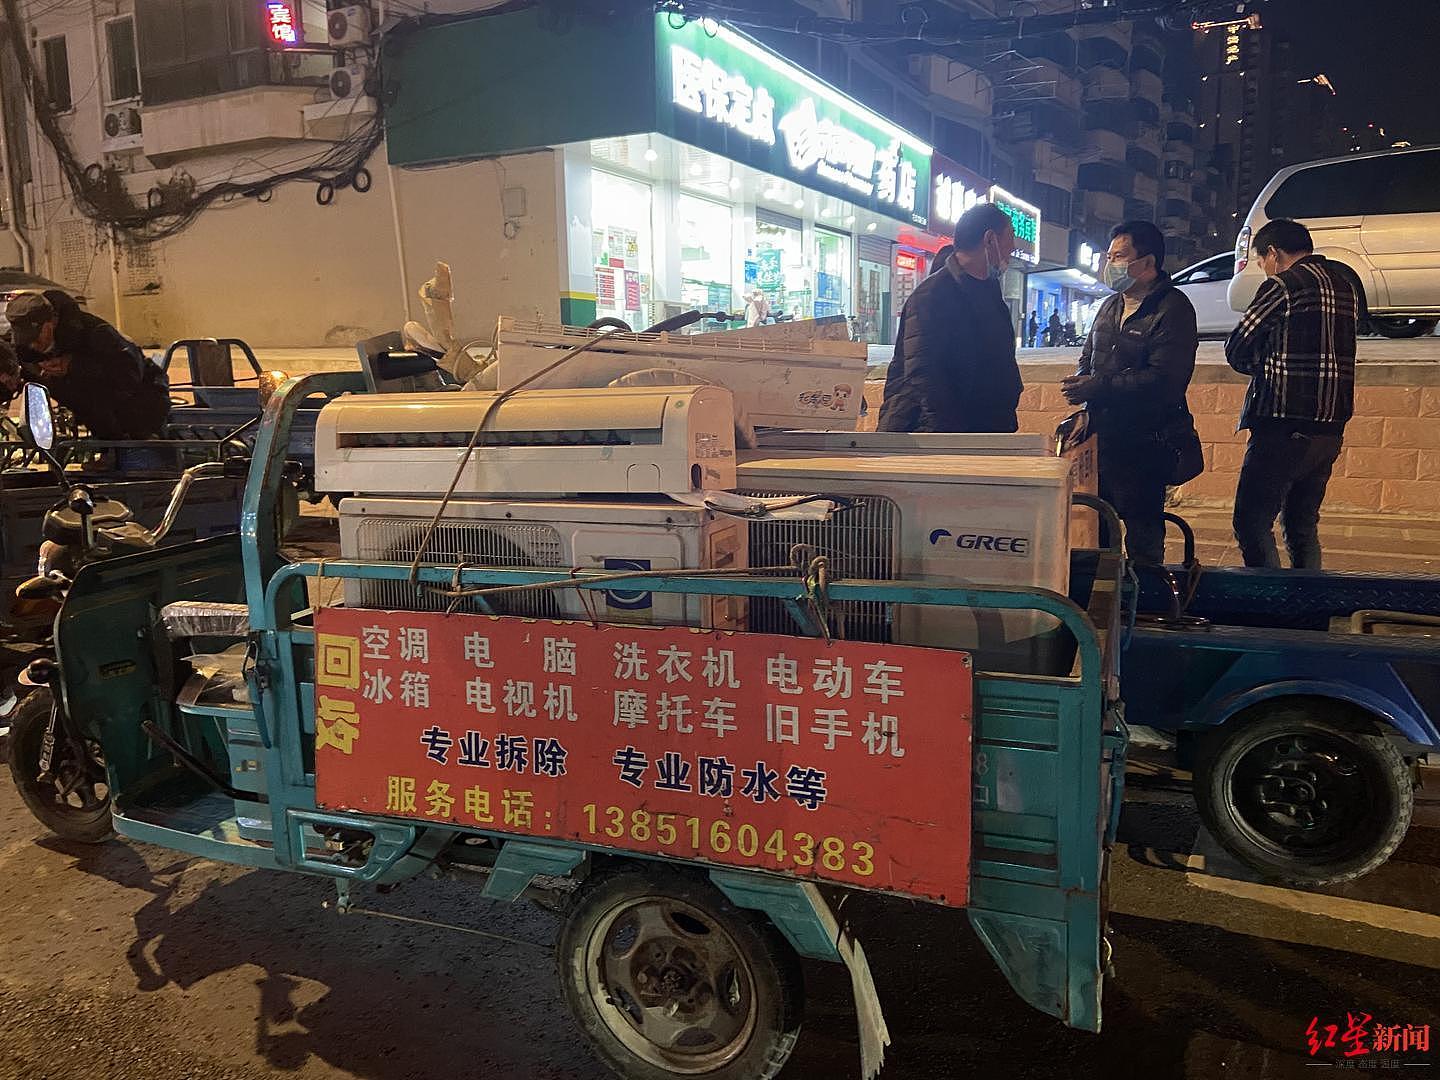 ↑来自安徽涡阳的废旧家电回收者每天的“路边聚会”。